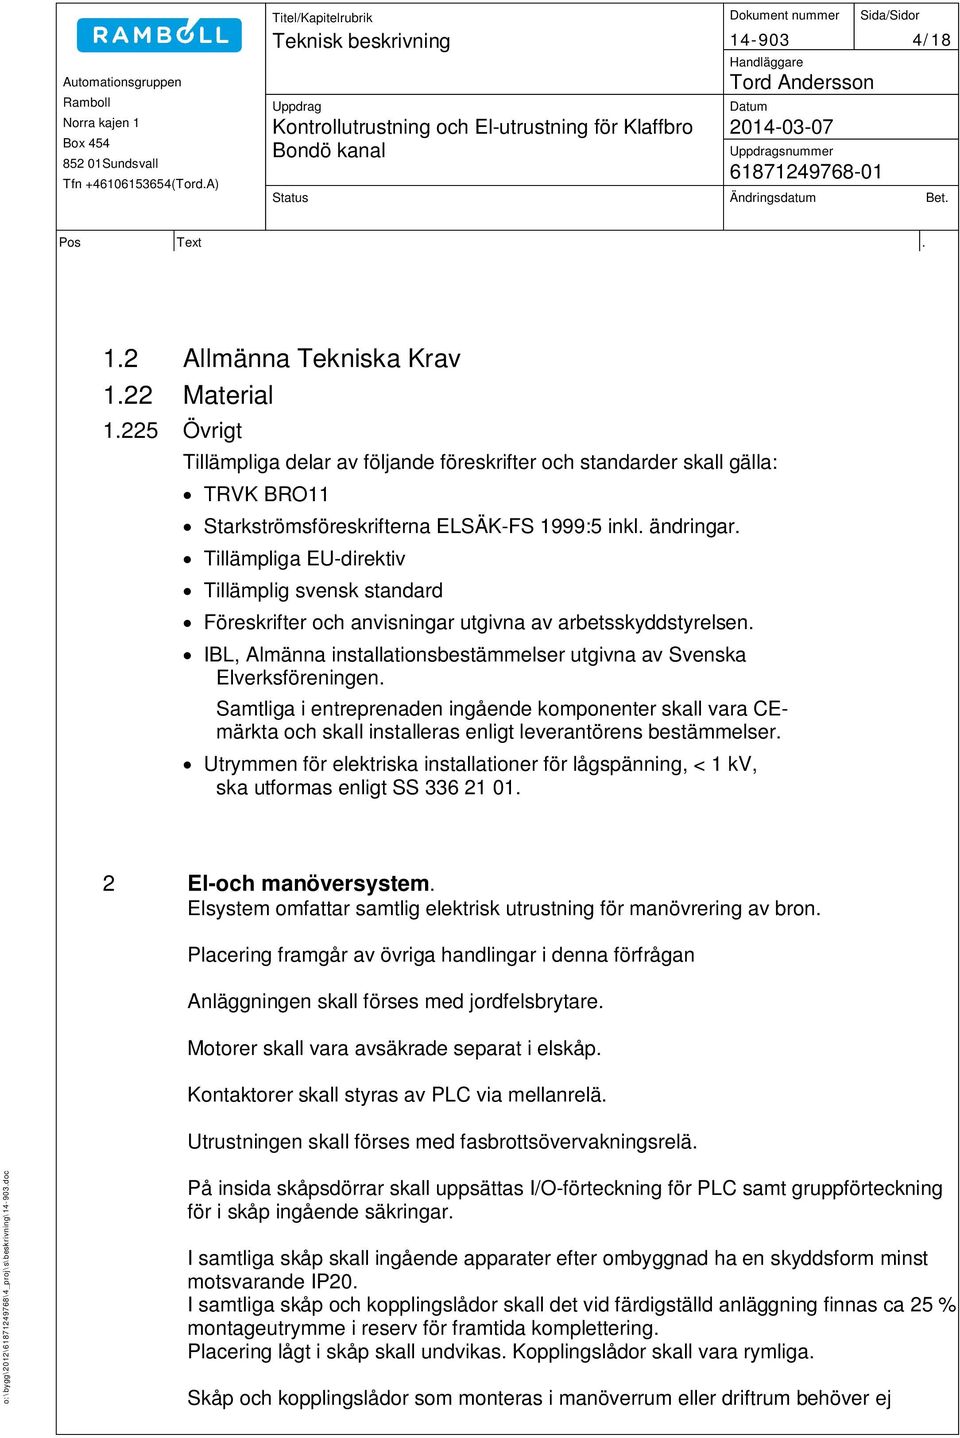 Tillämpliga EU-direktiv Tillämplig svensk standard Föreskrifter och anvisningar utgivna av arbetsskyddstyrelsen. IBL, Almänna installationsbestämmelser utgivna av Svenska Elverksföreningen.